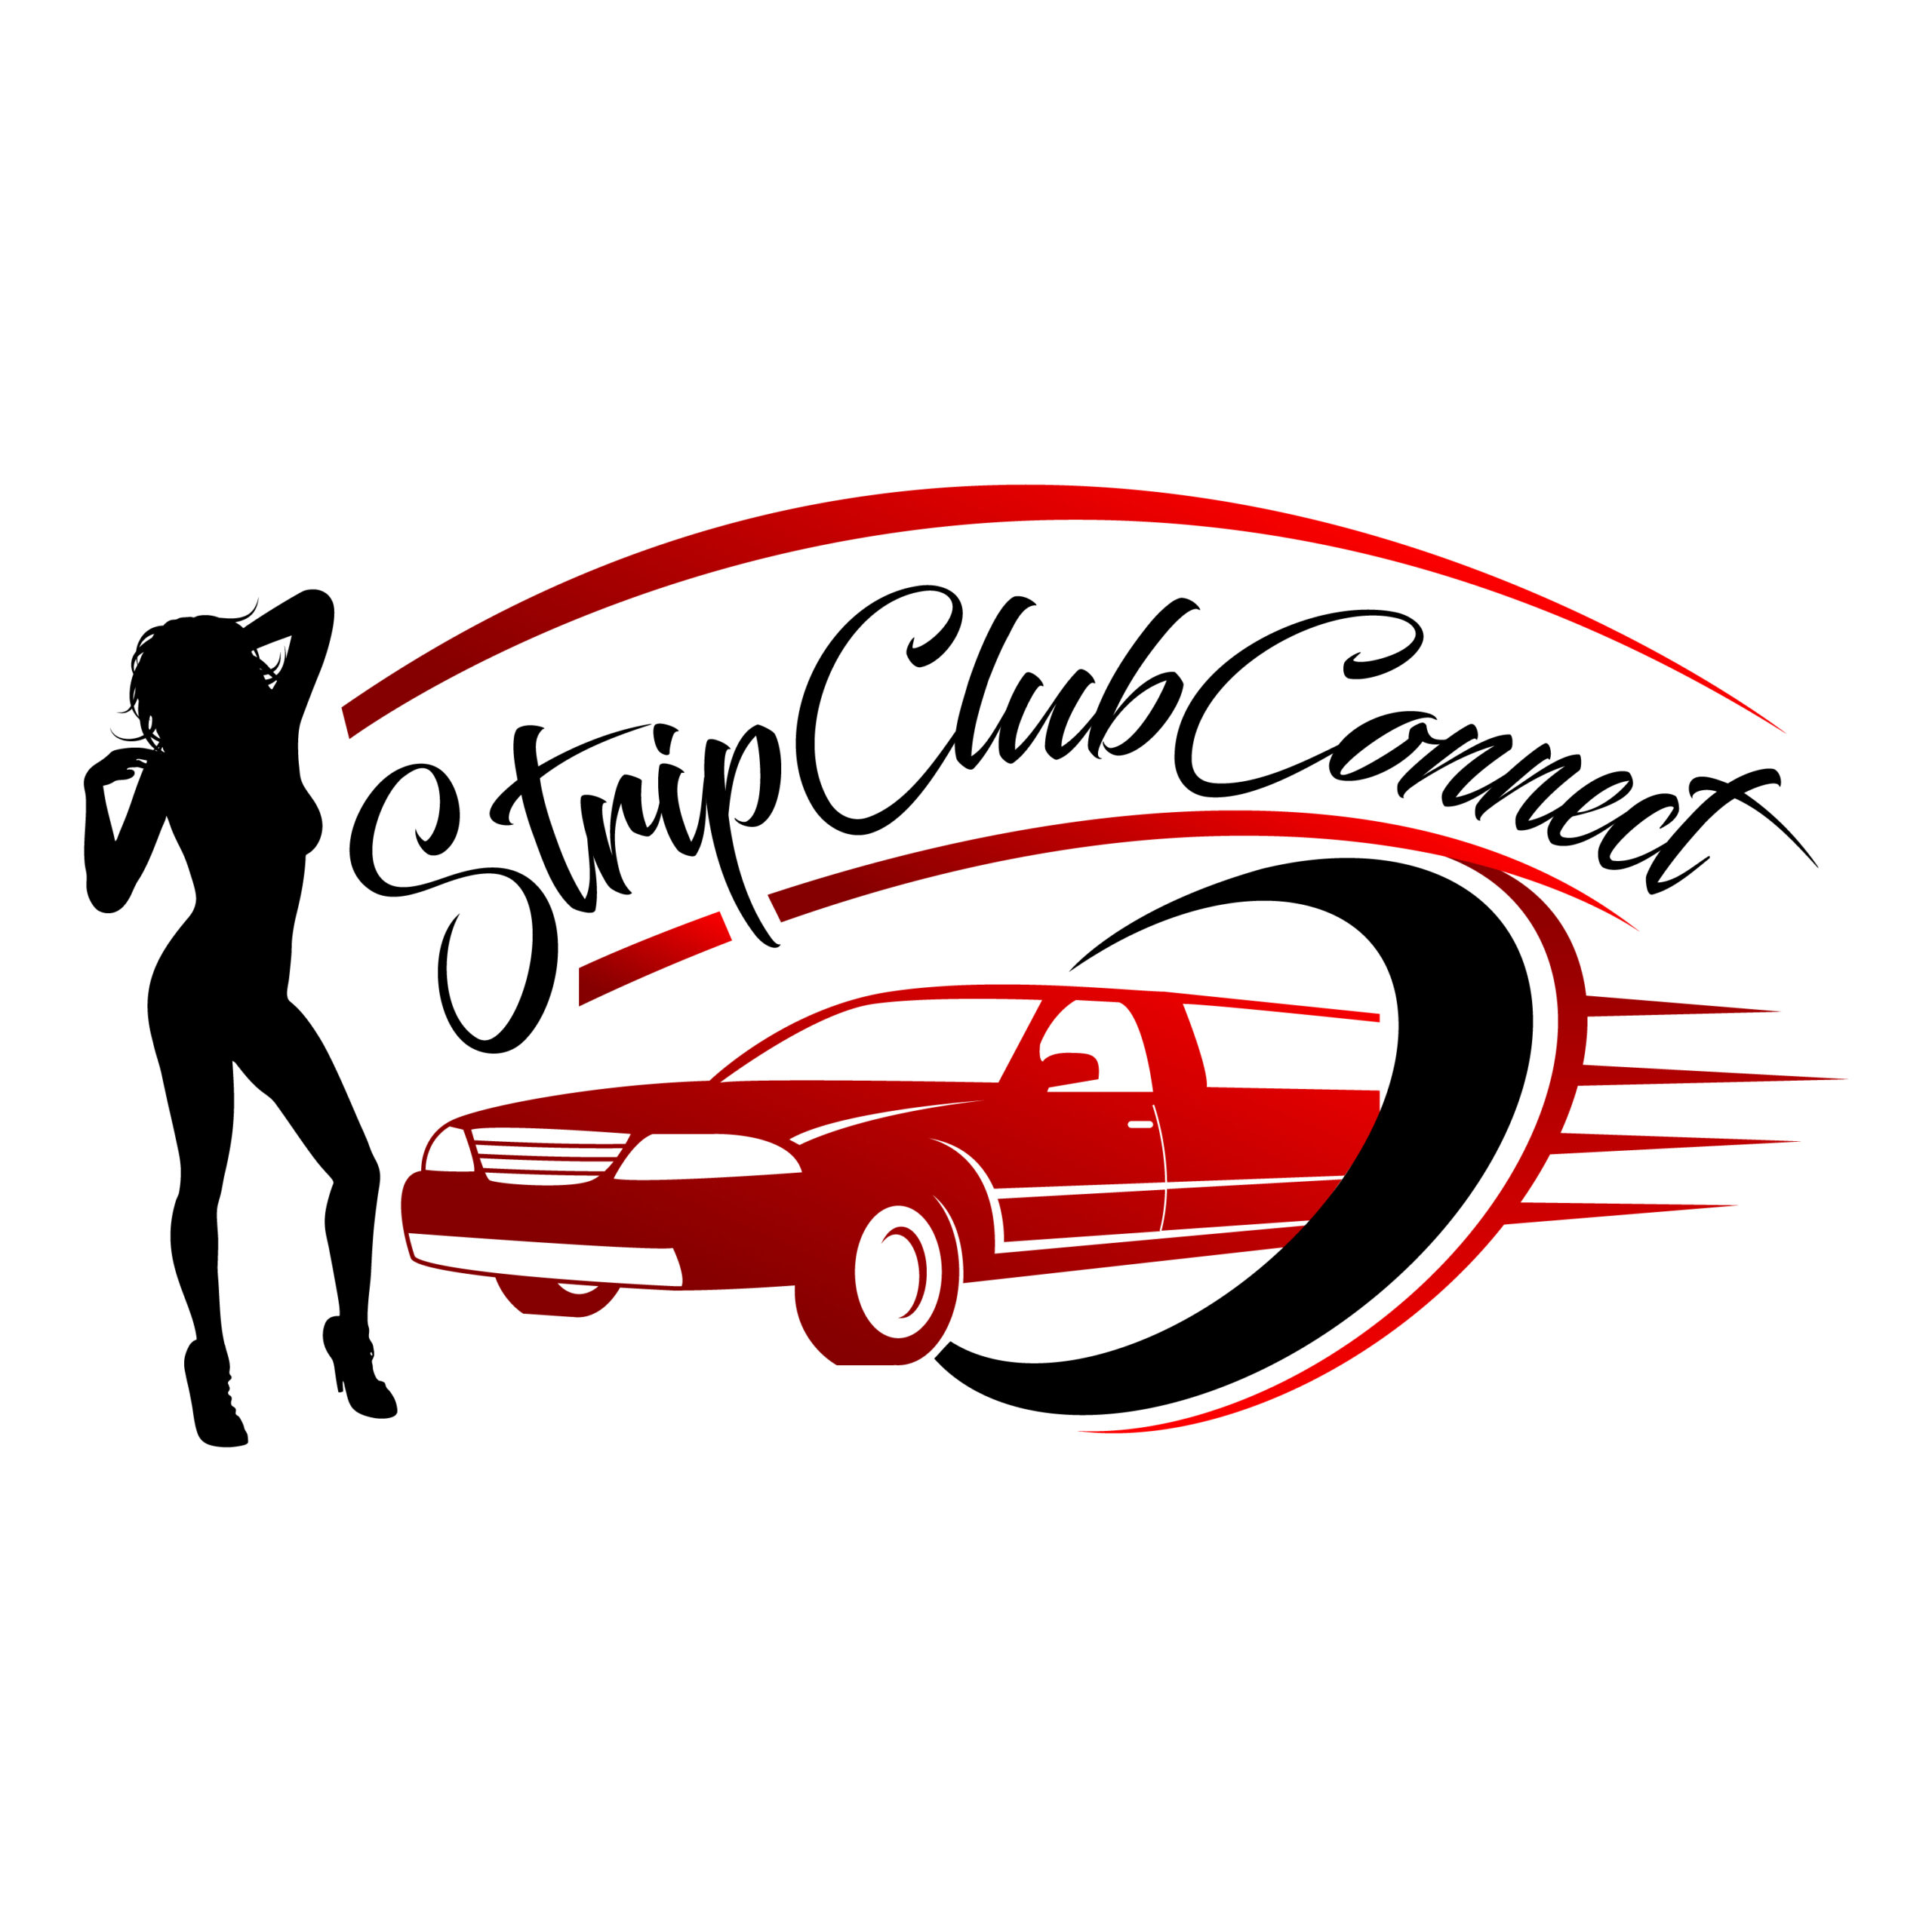 Strip Club Connect